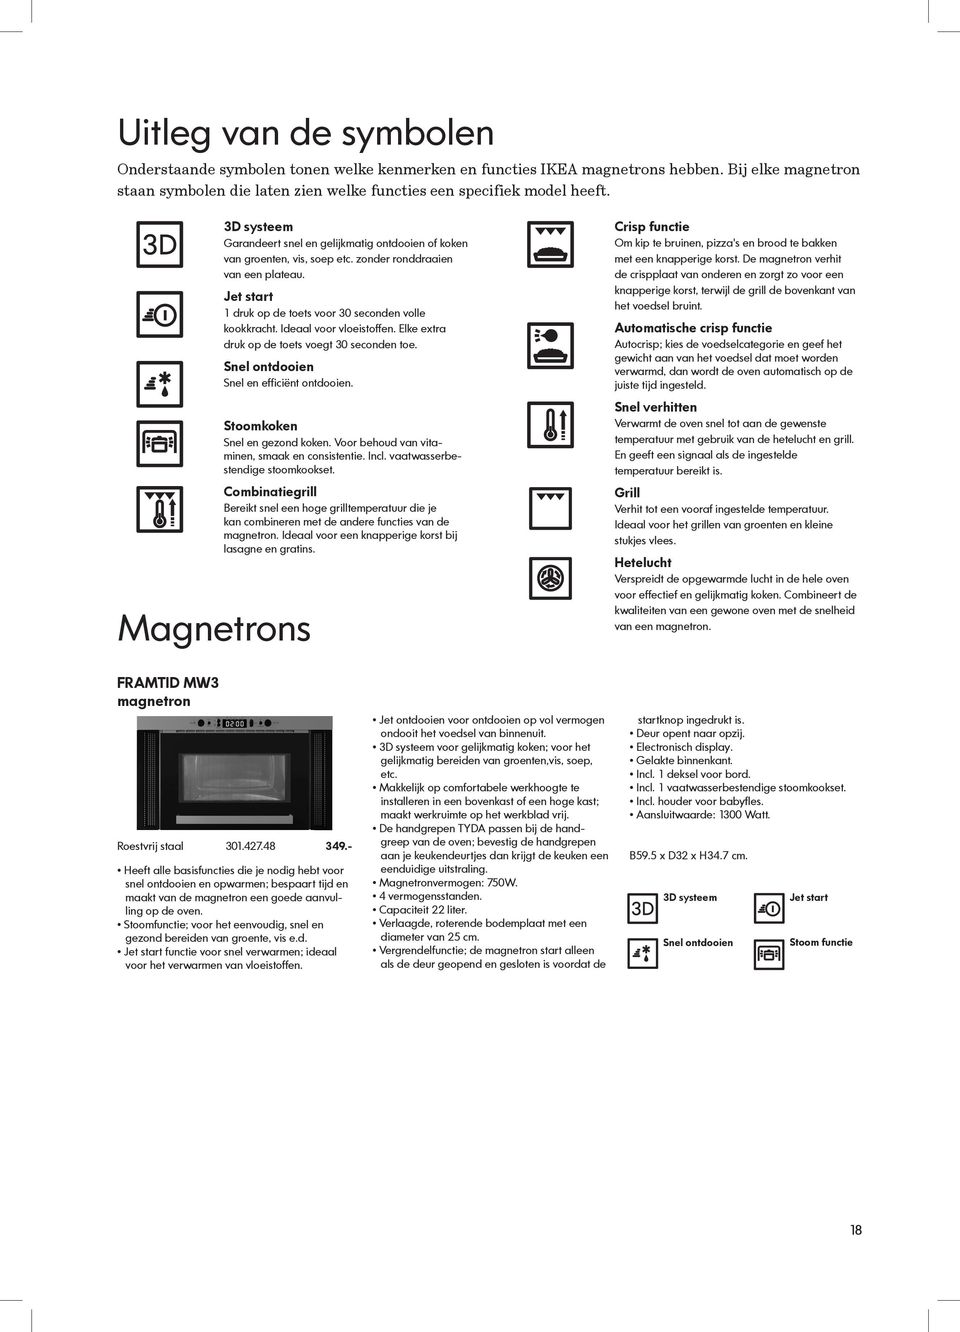 ikea apparatuur ontworpen voor elke dag pdf free download